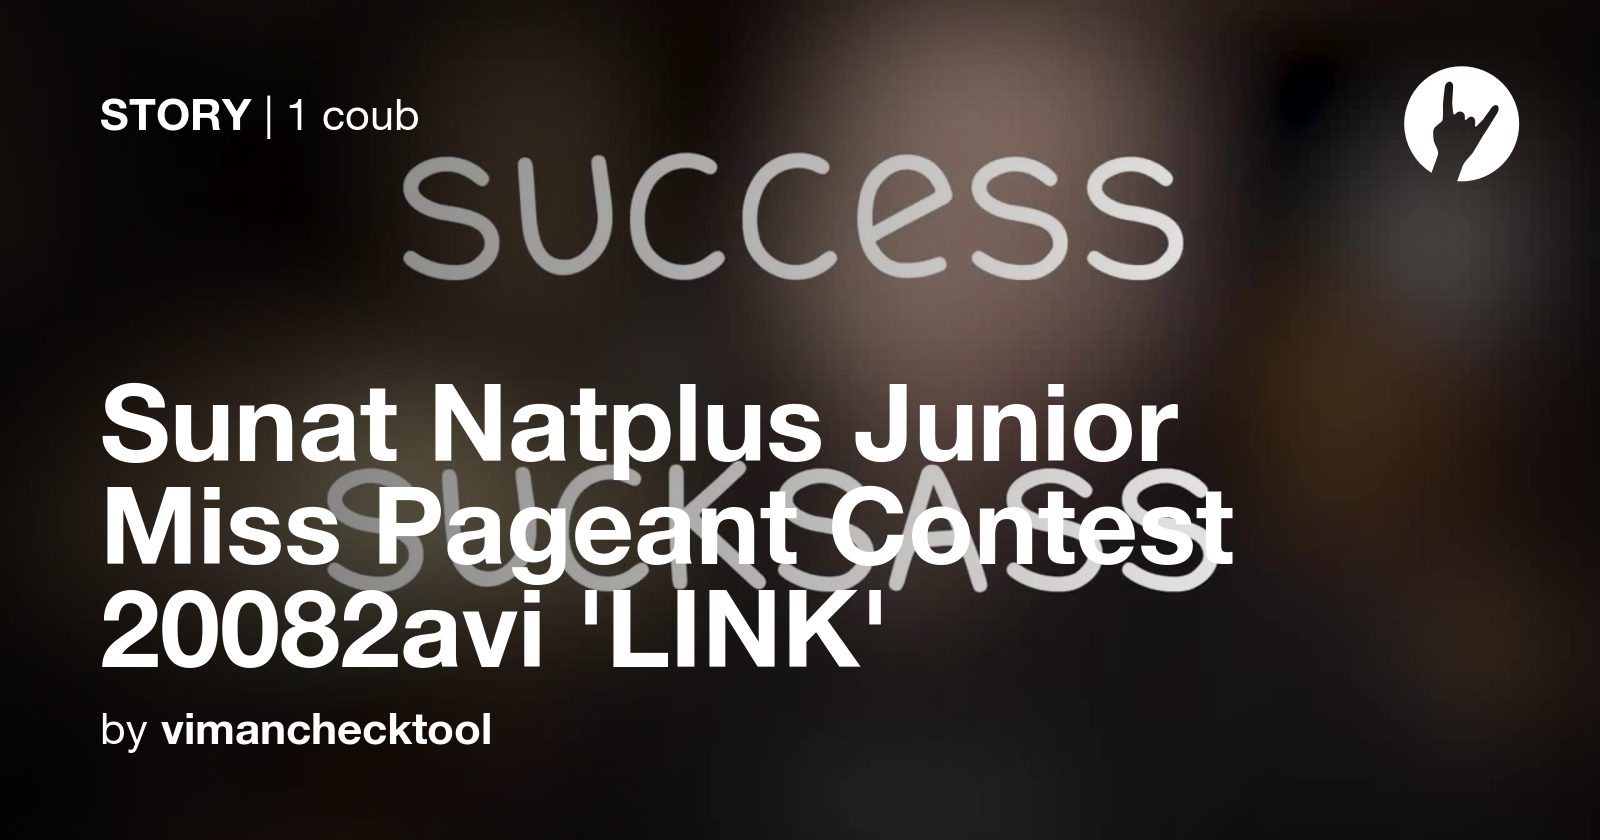 Sunat Natplus Junior Miss Pageant Contest Avi Link Coub